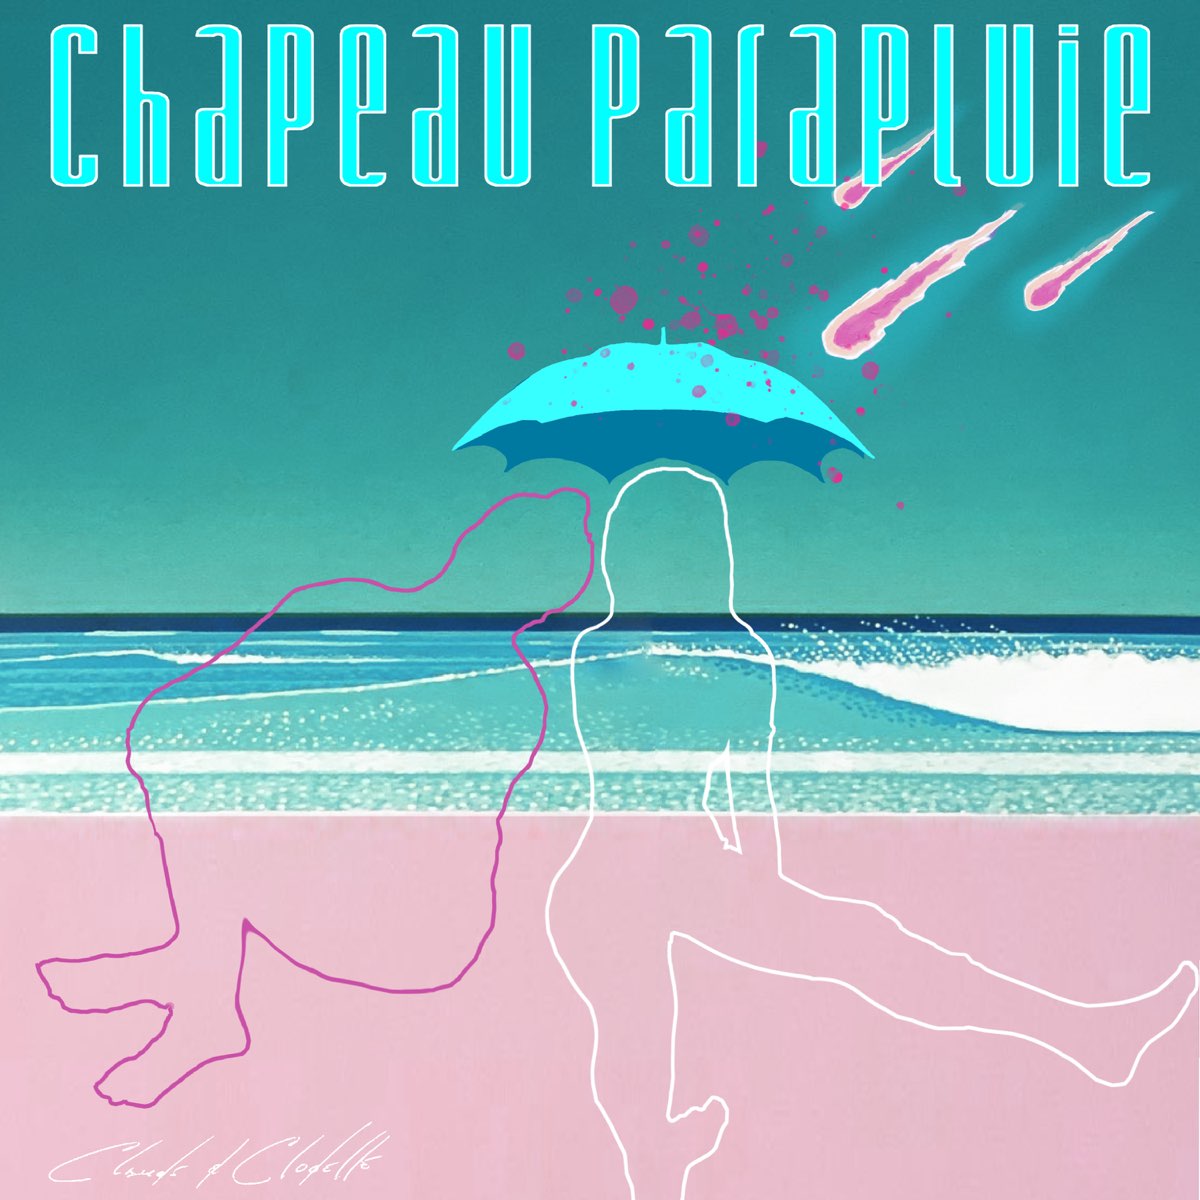 Chapeau parapluie - Single by Clodelle & Claude Bégin on Apple Music